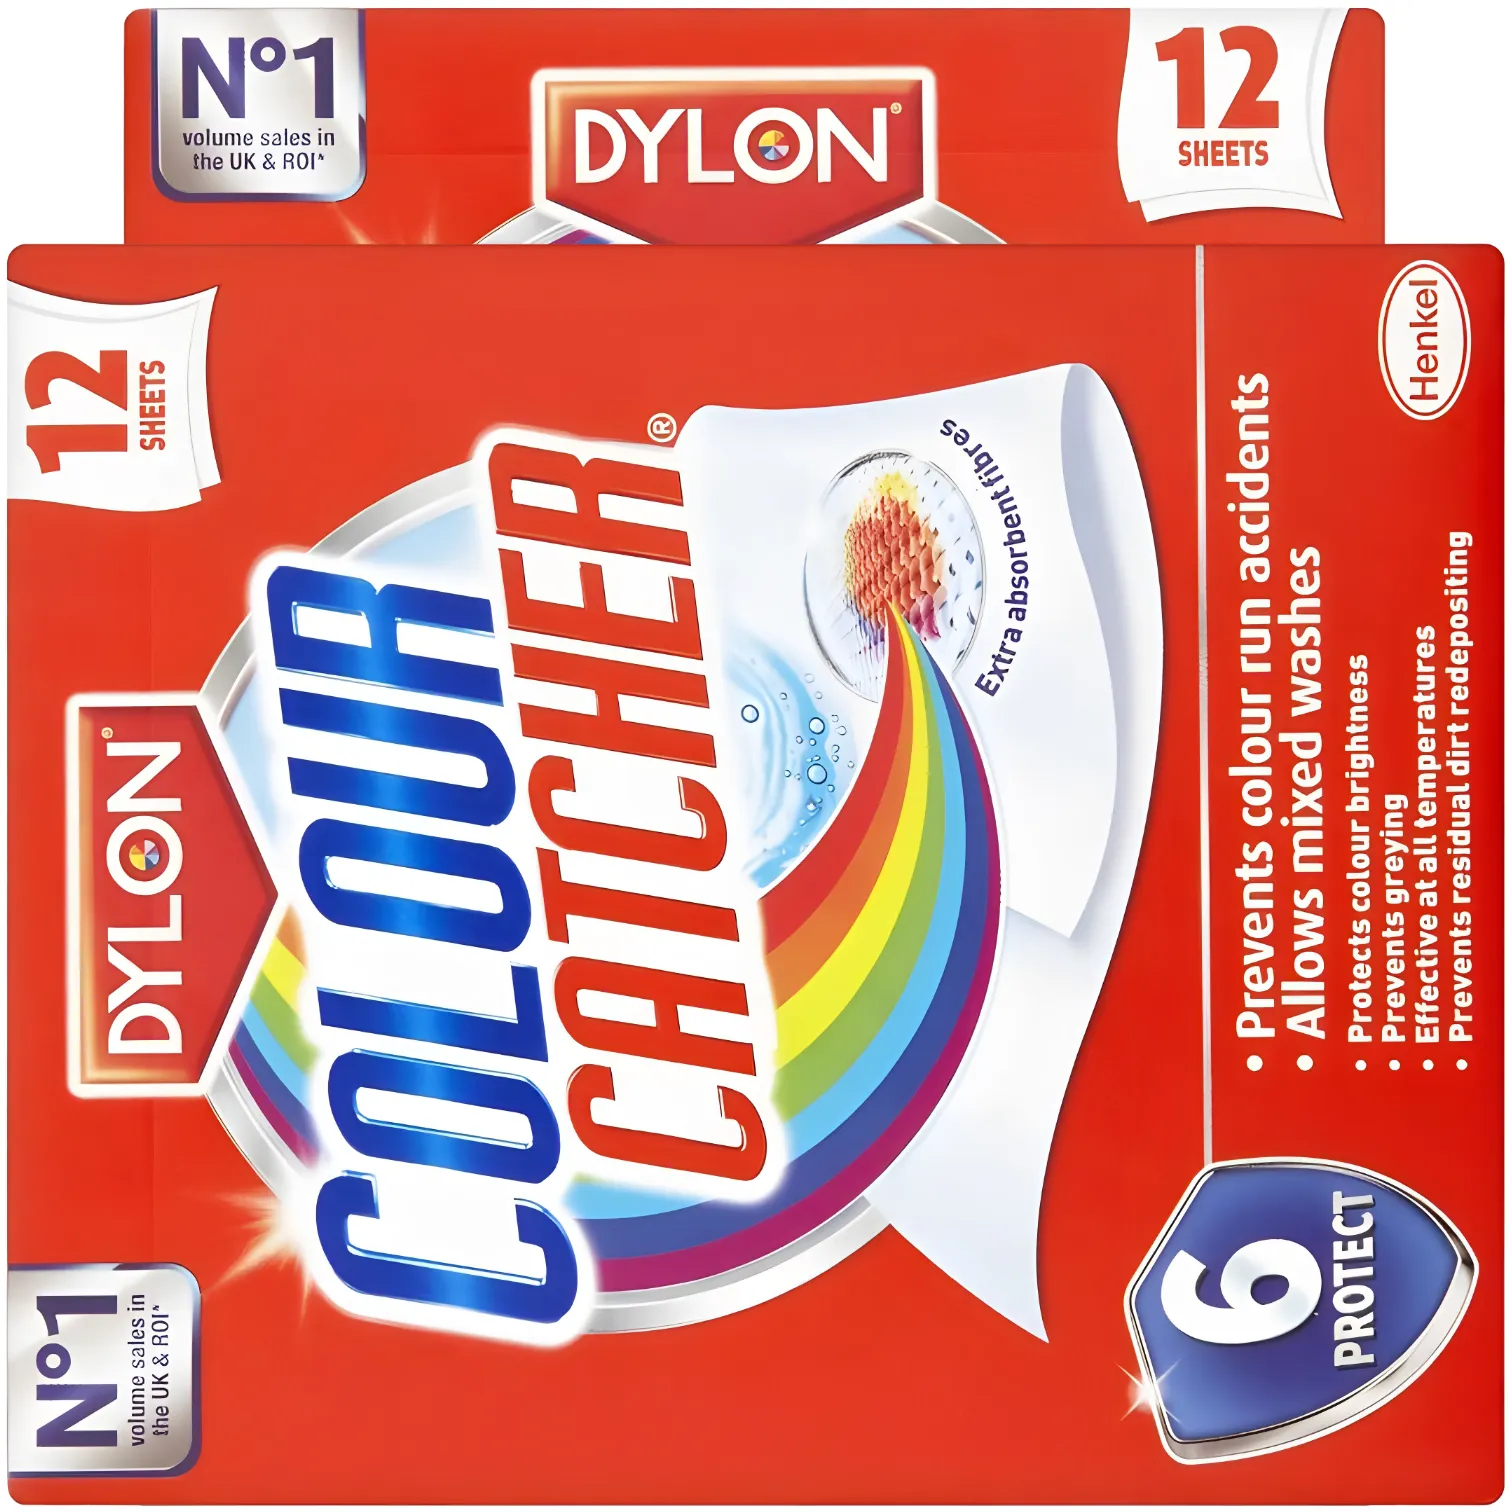 Free Dylon Colour Catcher